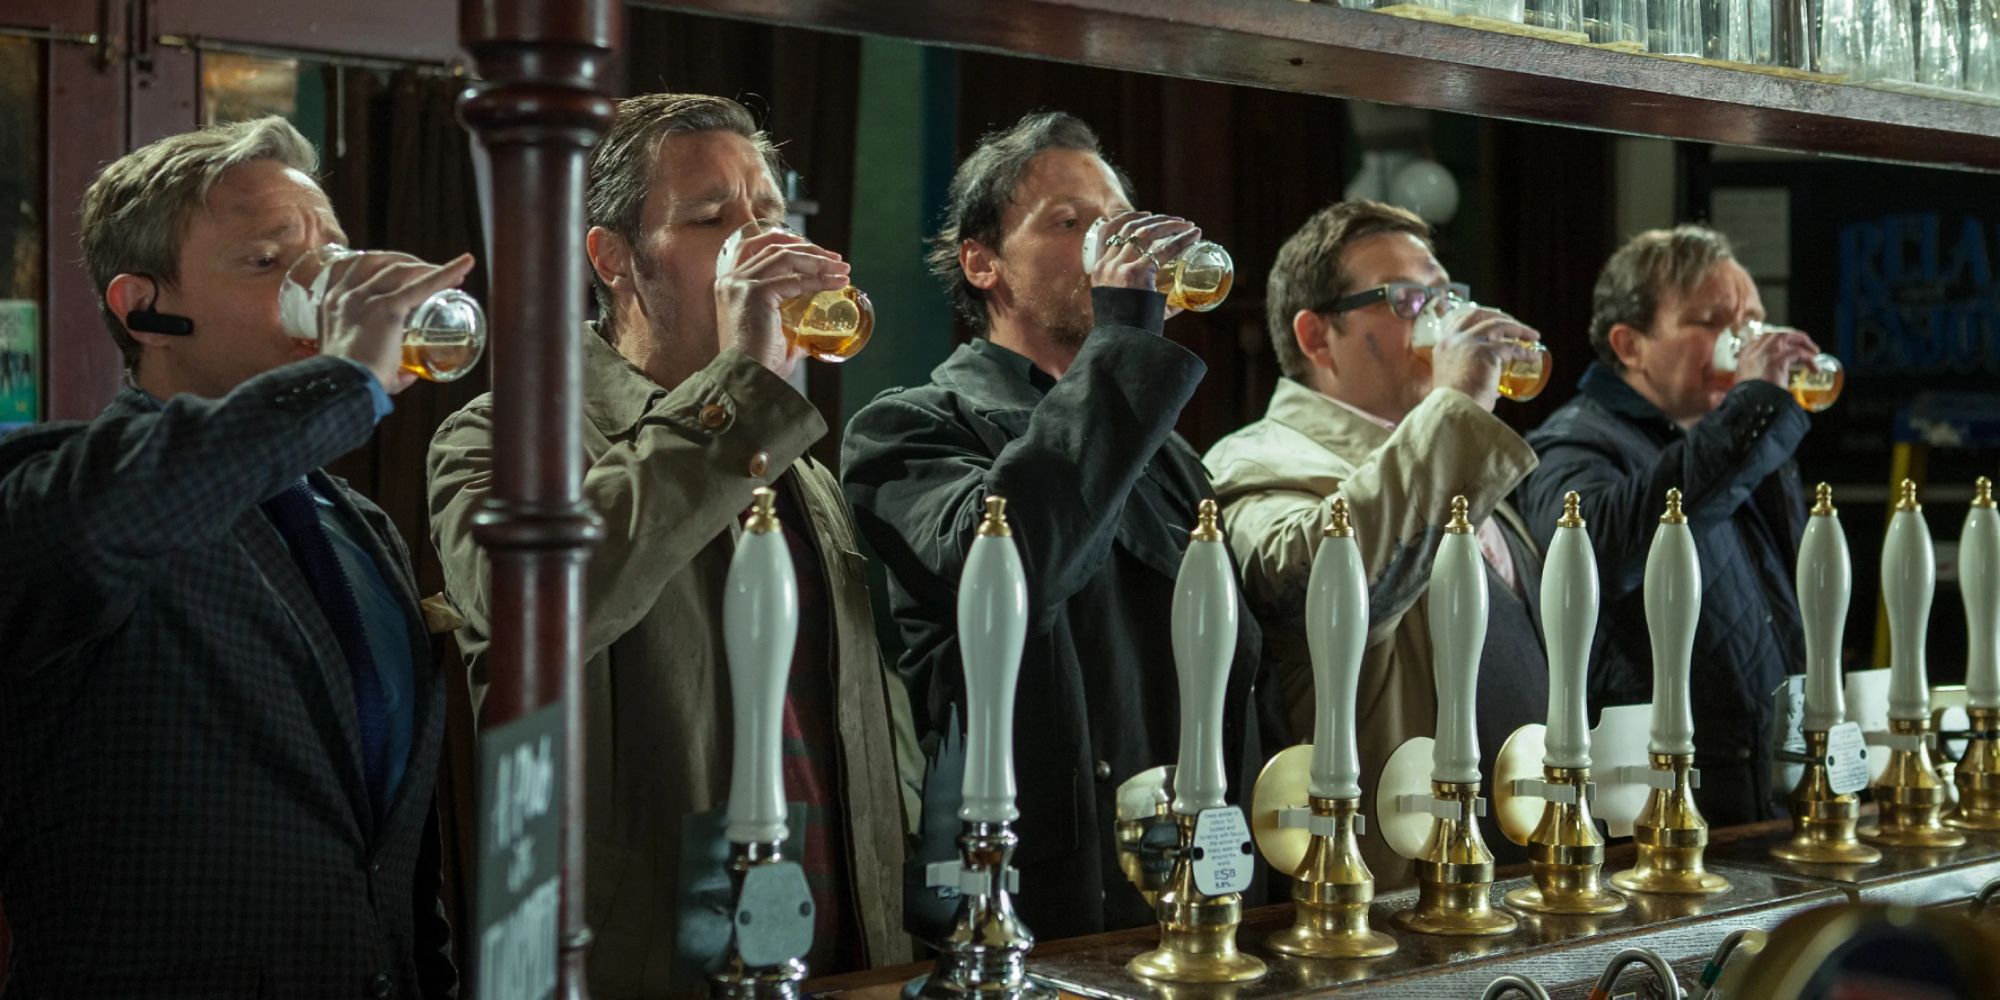 Cinq hommes boivent en synchronisation dans un bar de The World's End.